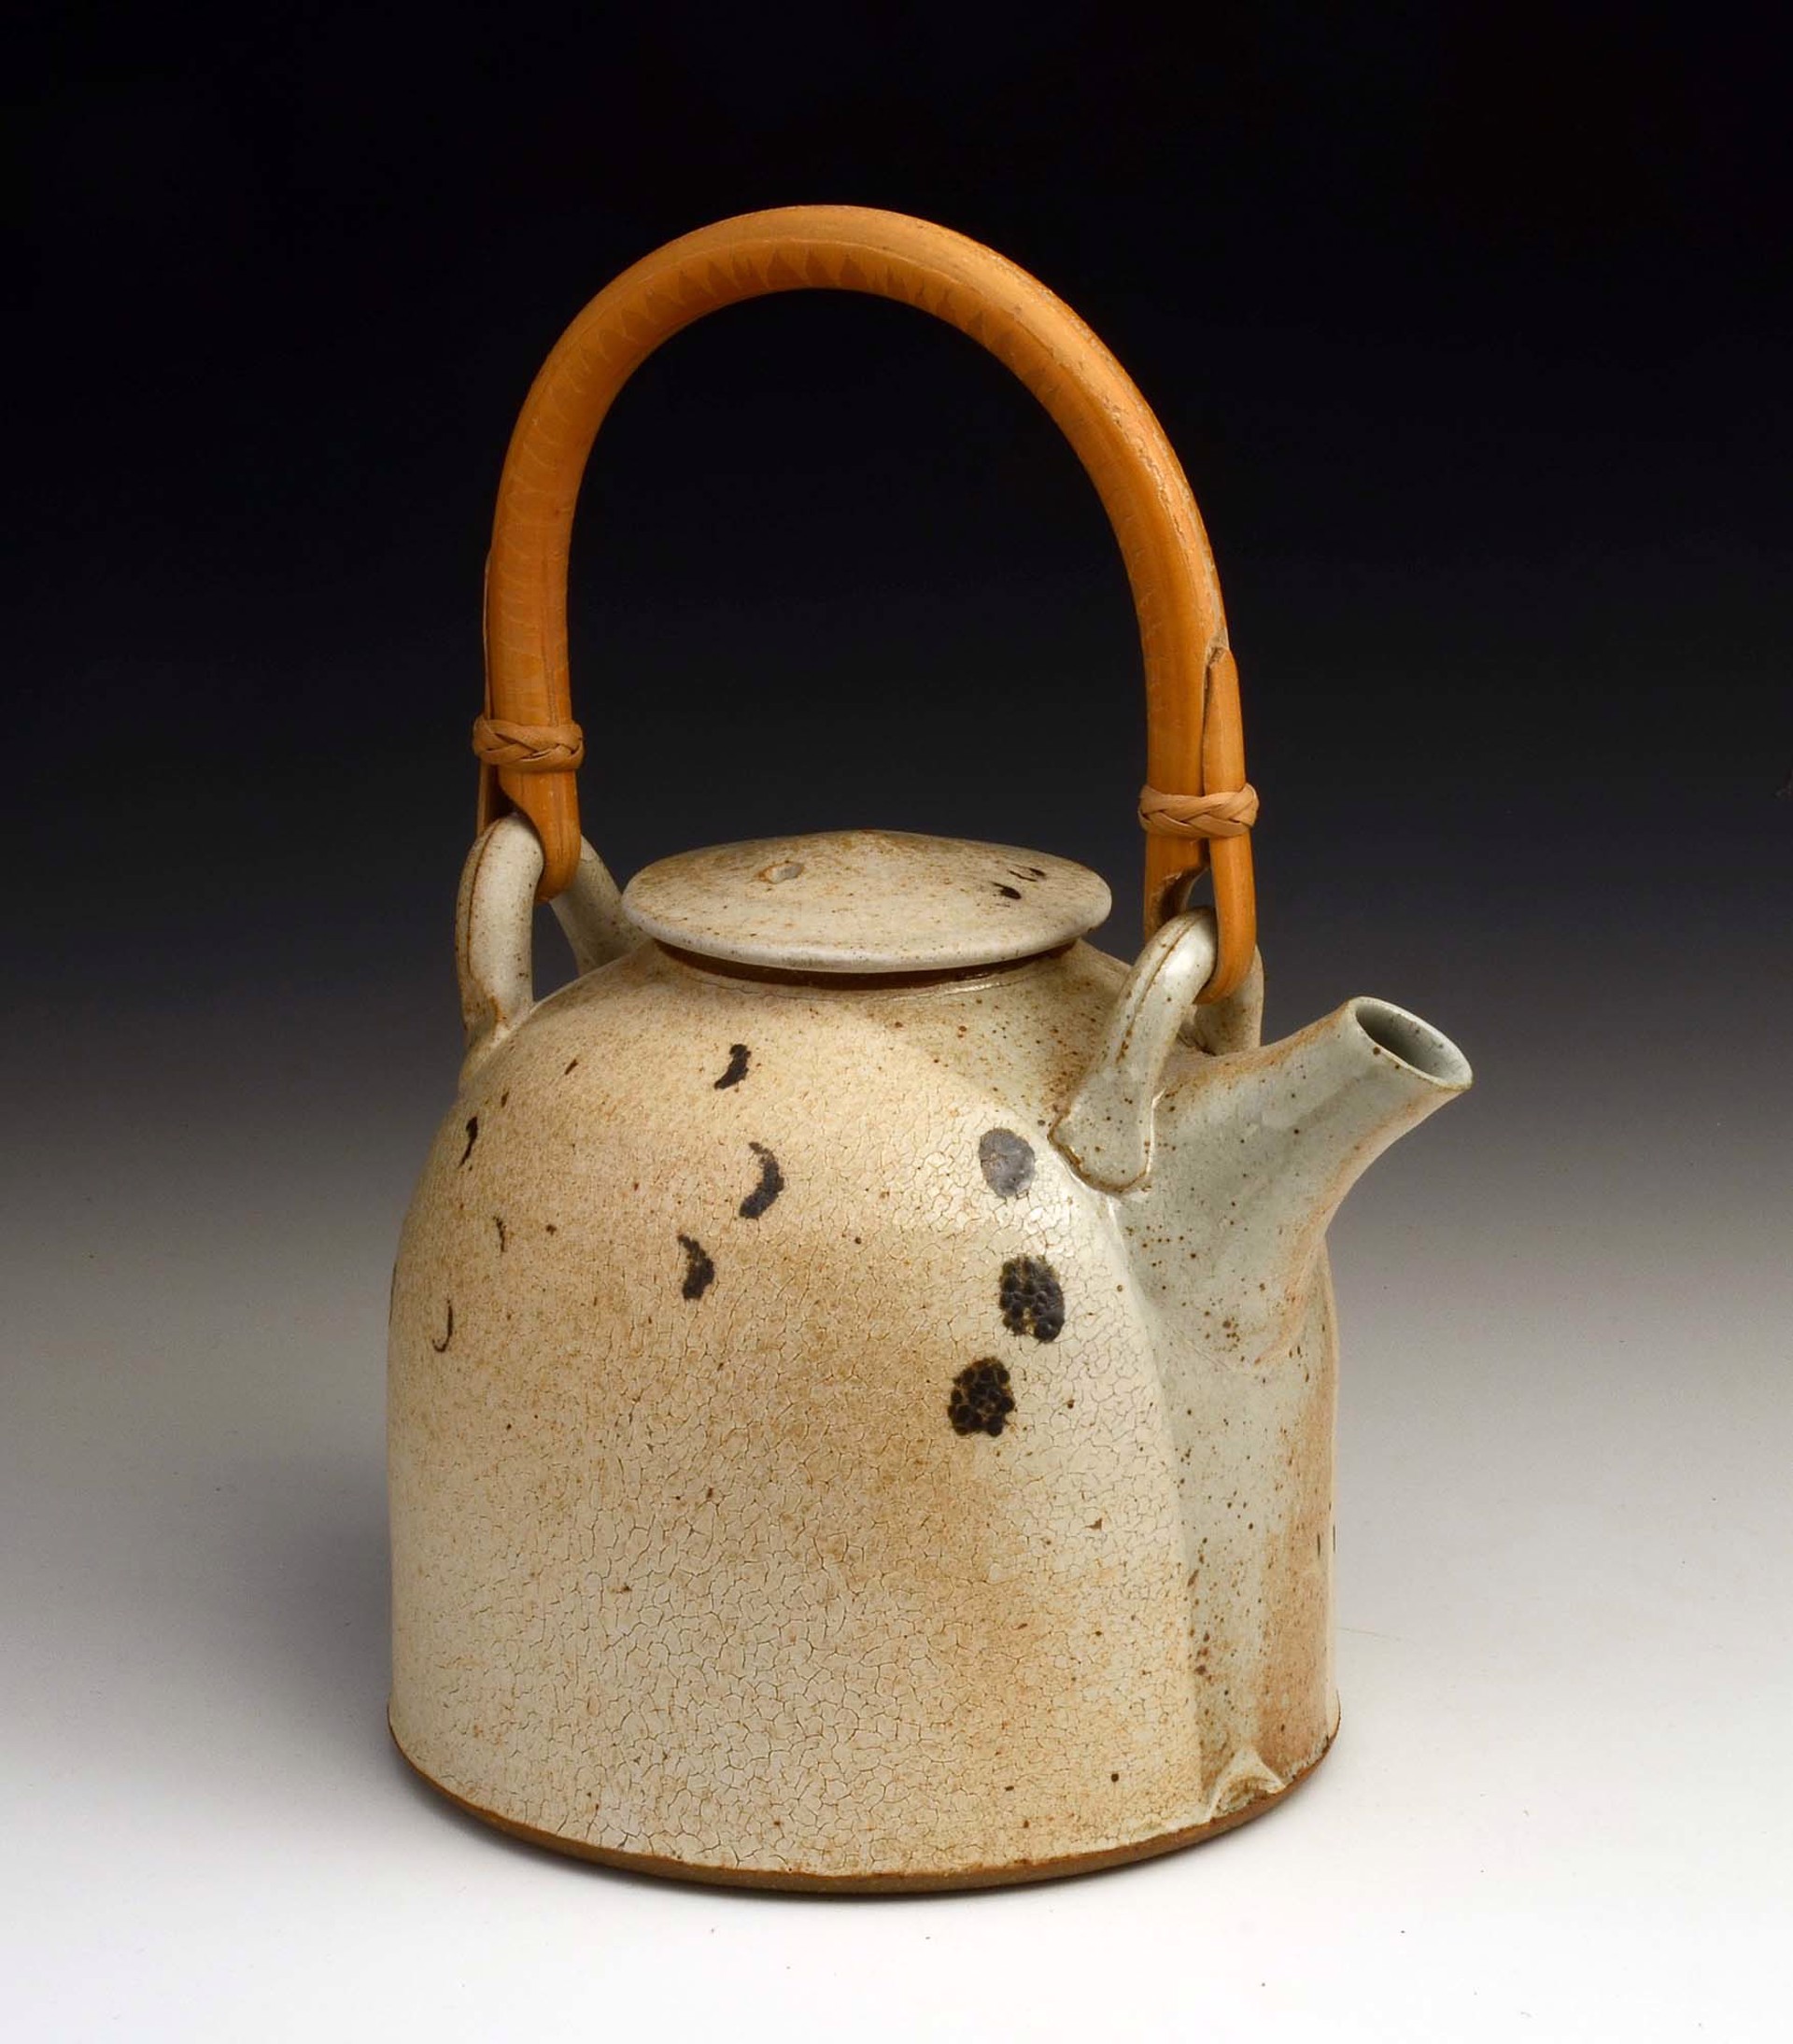 Teapot by Rick Hintze